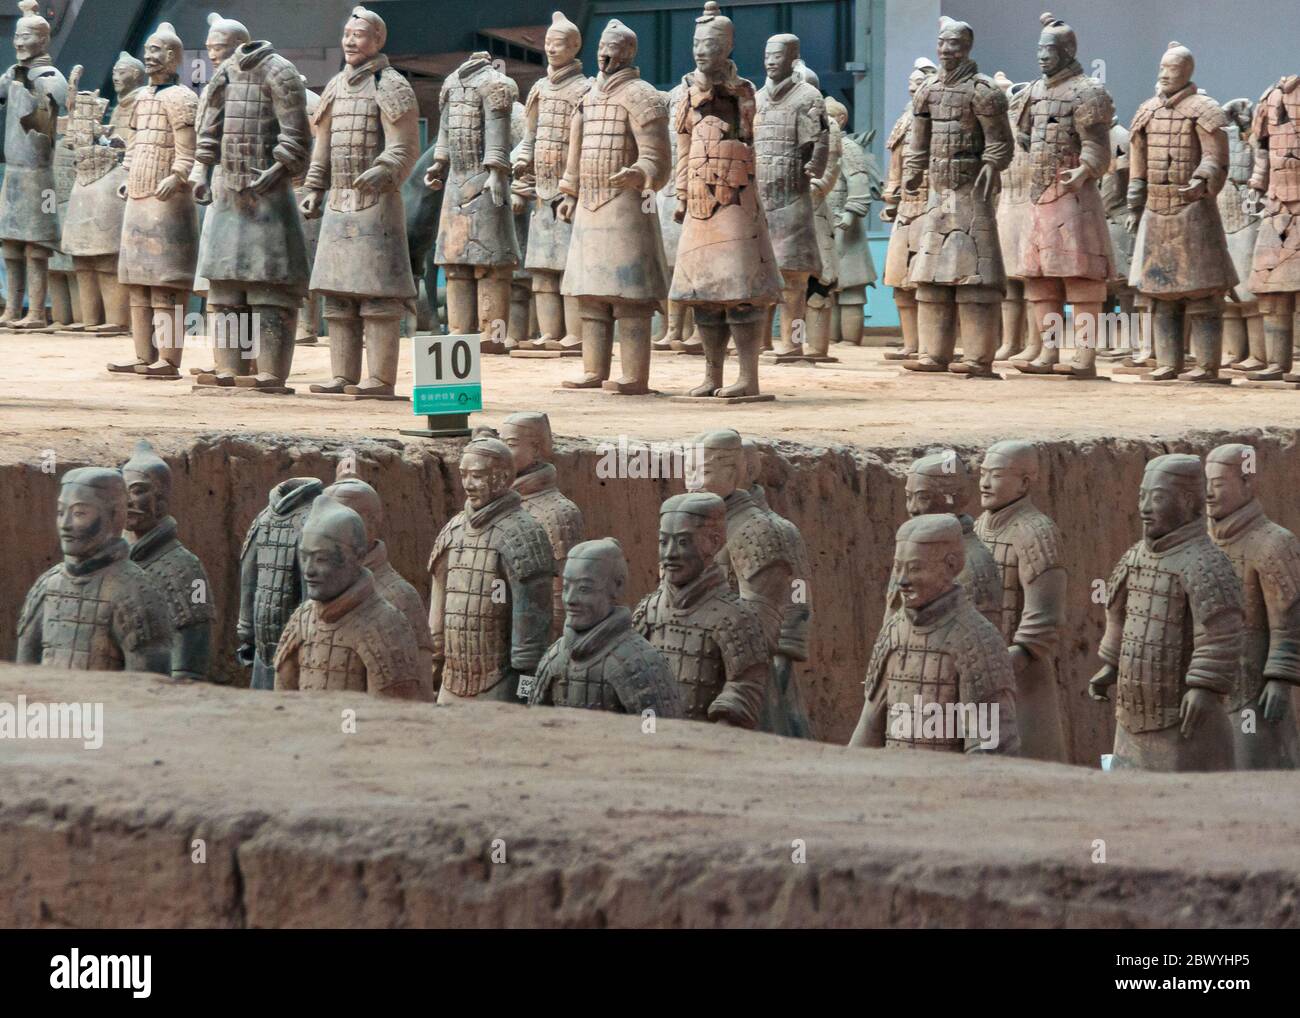 Xian, Cina - 1 maggio 2010: Museo e sala dell'Esercito di terracotta. 2 livelli di sculture di soldato grigio-beige allo scavo. Foto Stock